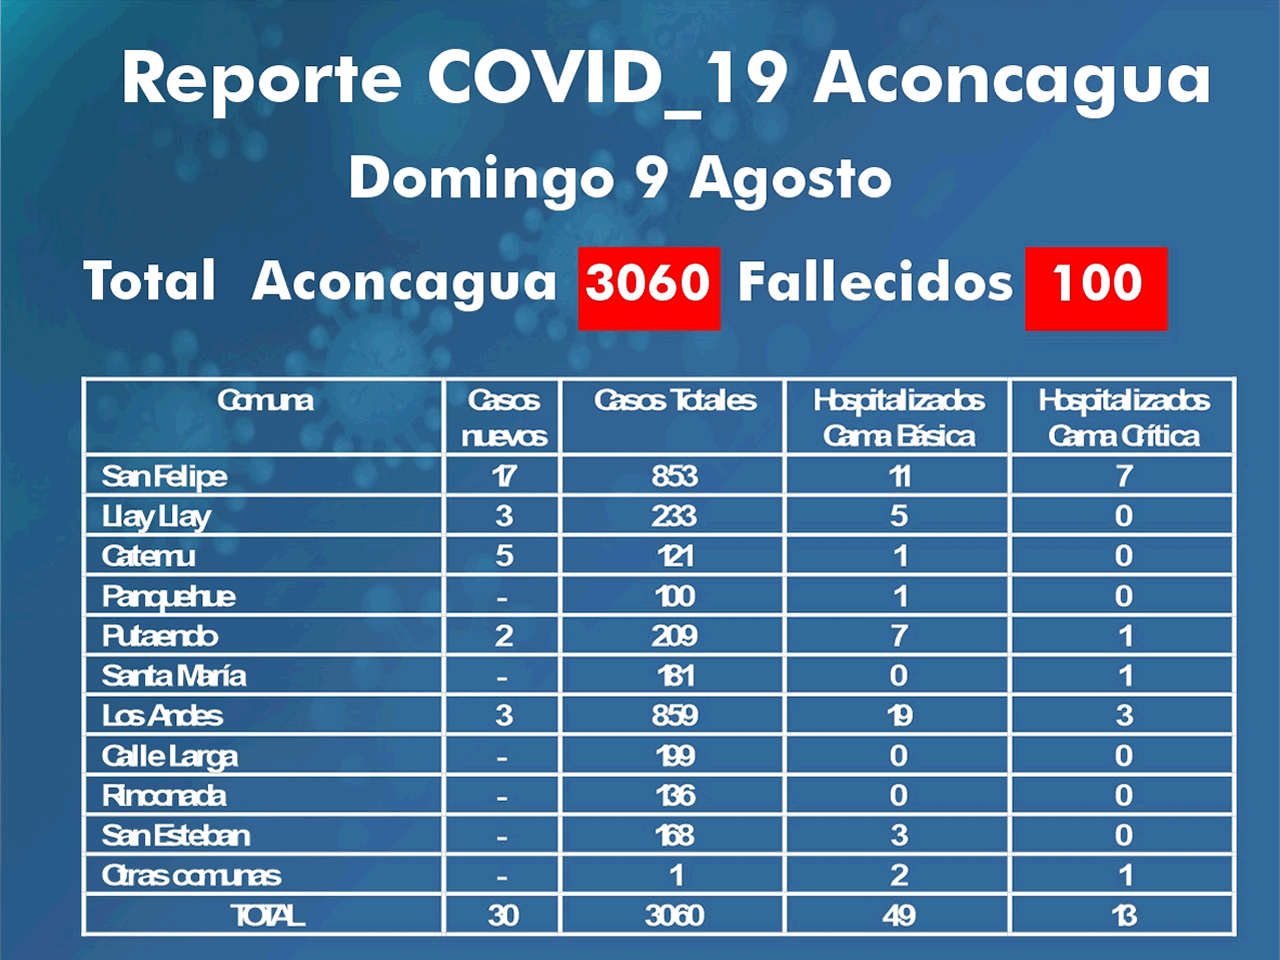 #ACONCAGUA: El Valle de Aconcagua alcanza los 100 fallecidos por COVID19 y ya suma 3089 casos totales confirmados